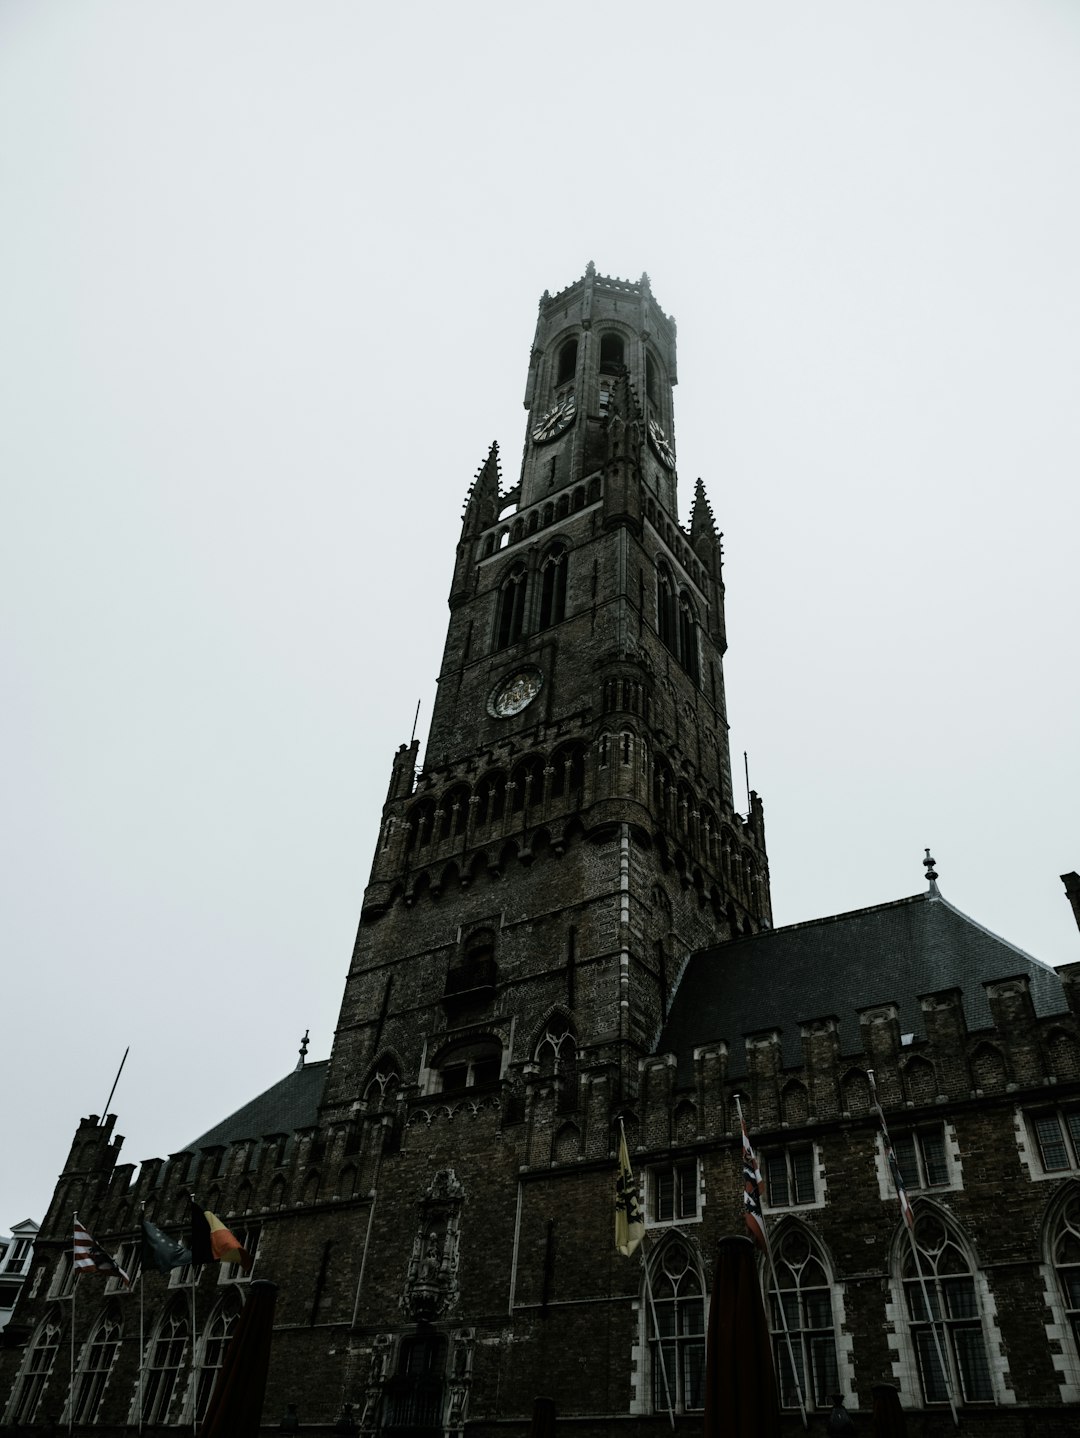 Travel Tips and Stories of Belfort Brugge in Belgium